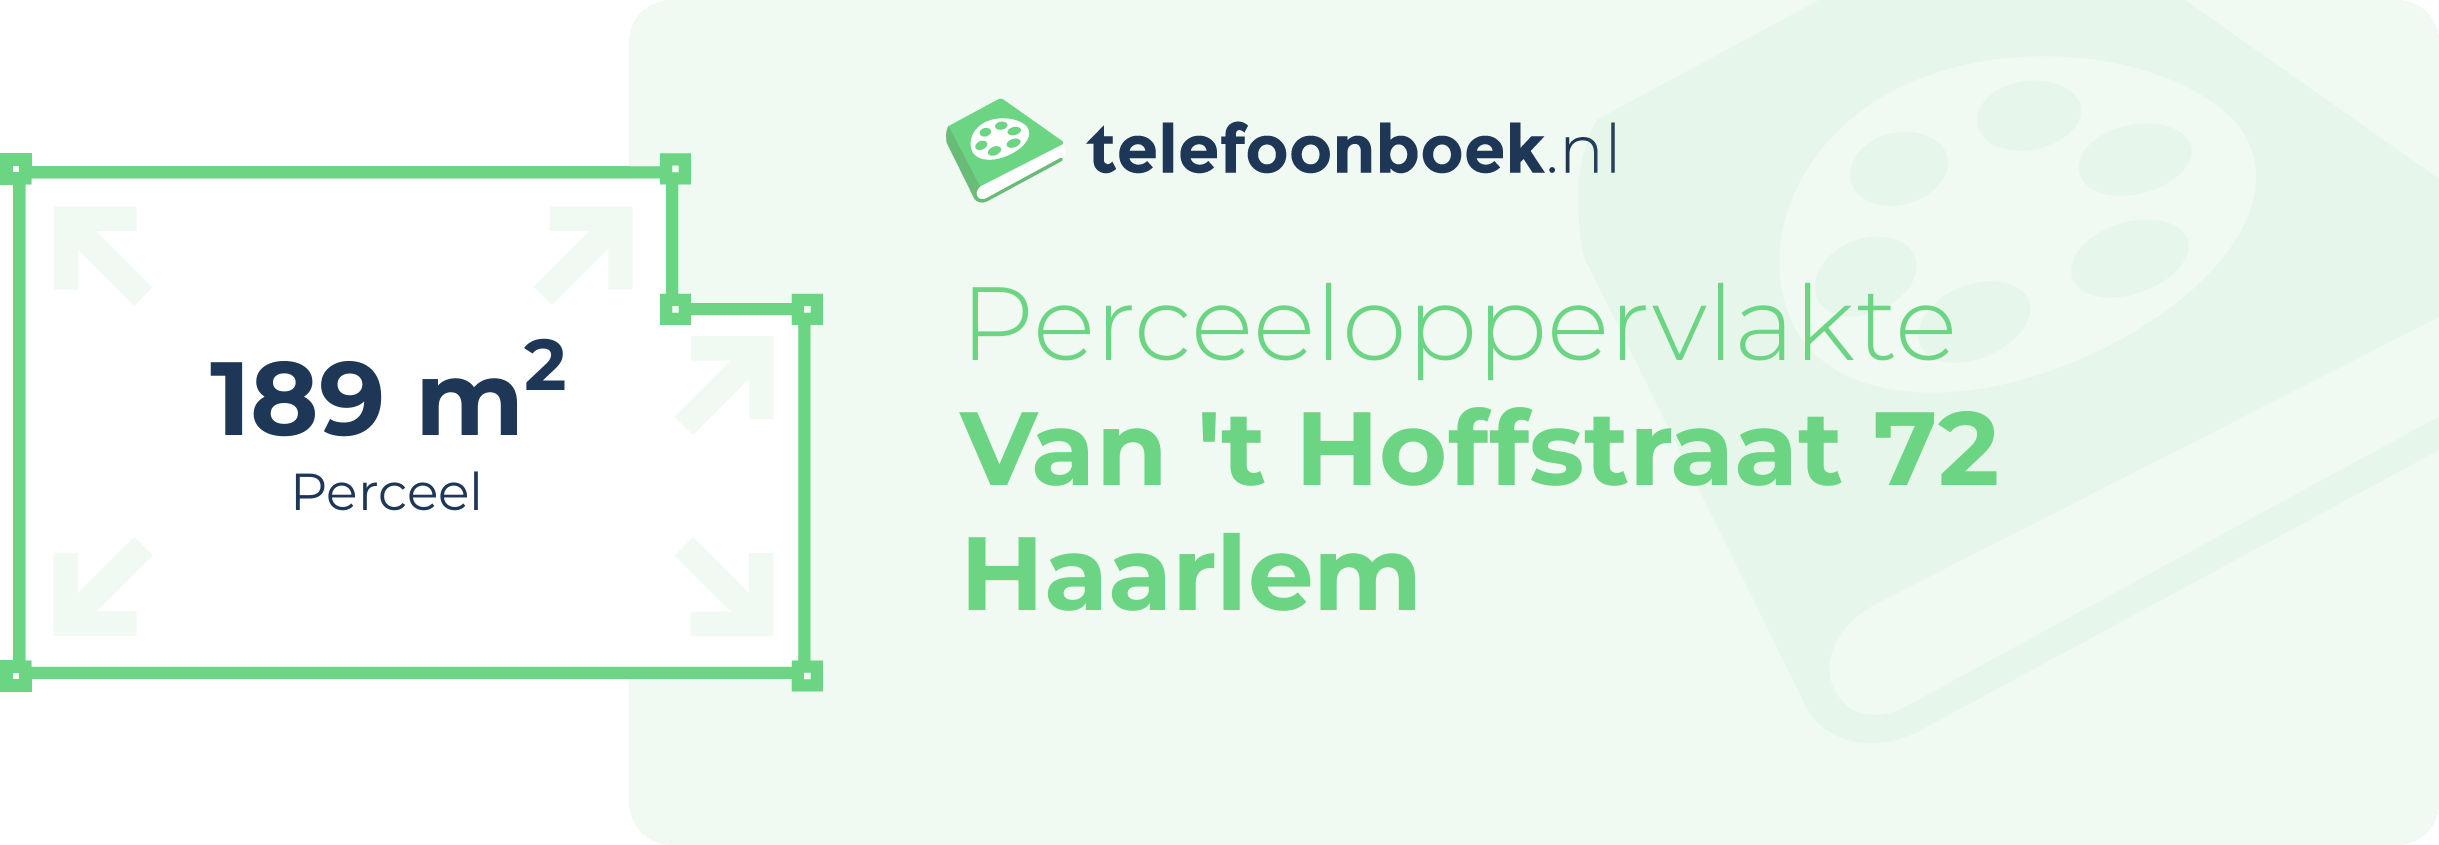 Perceeloppervlakte Van 't Hoffstraat 72 Haarlem